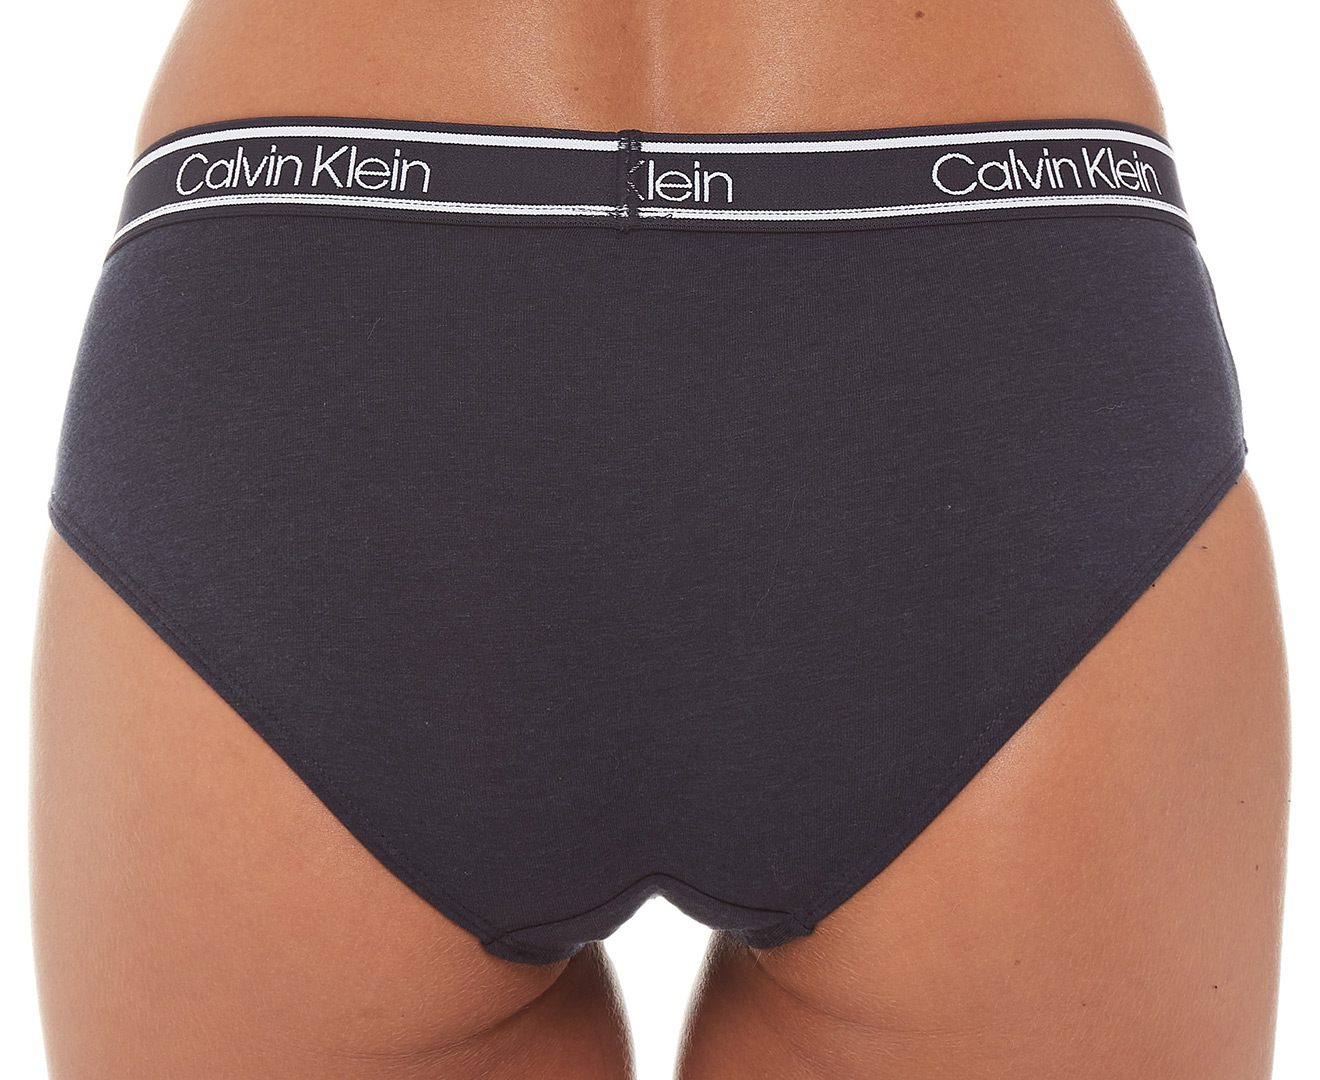 Calvin Klein Women's Bamboo Comfort Hipster Briefs 3-Pack - Assorted (HZD)